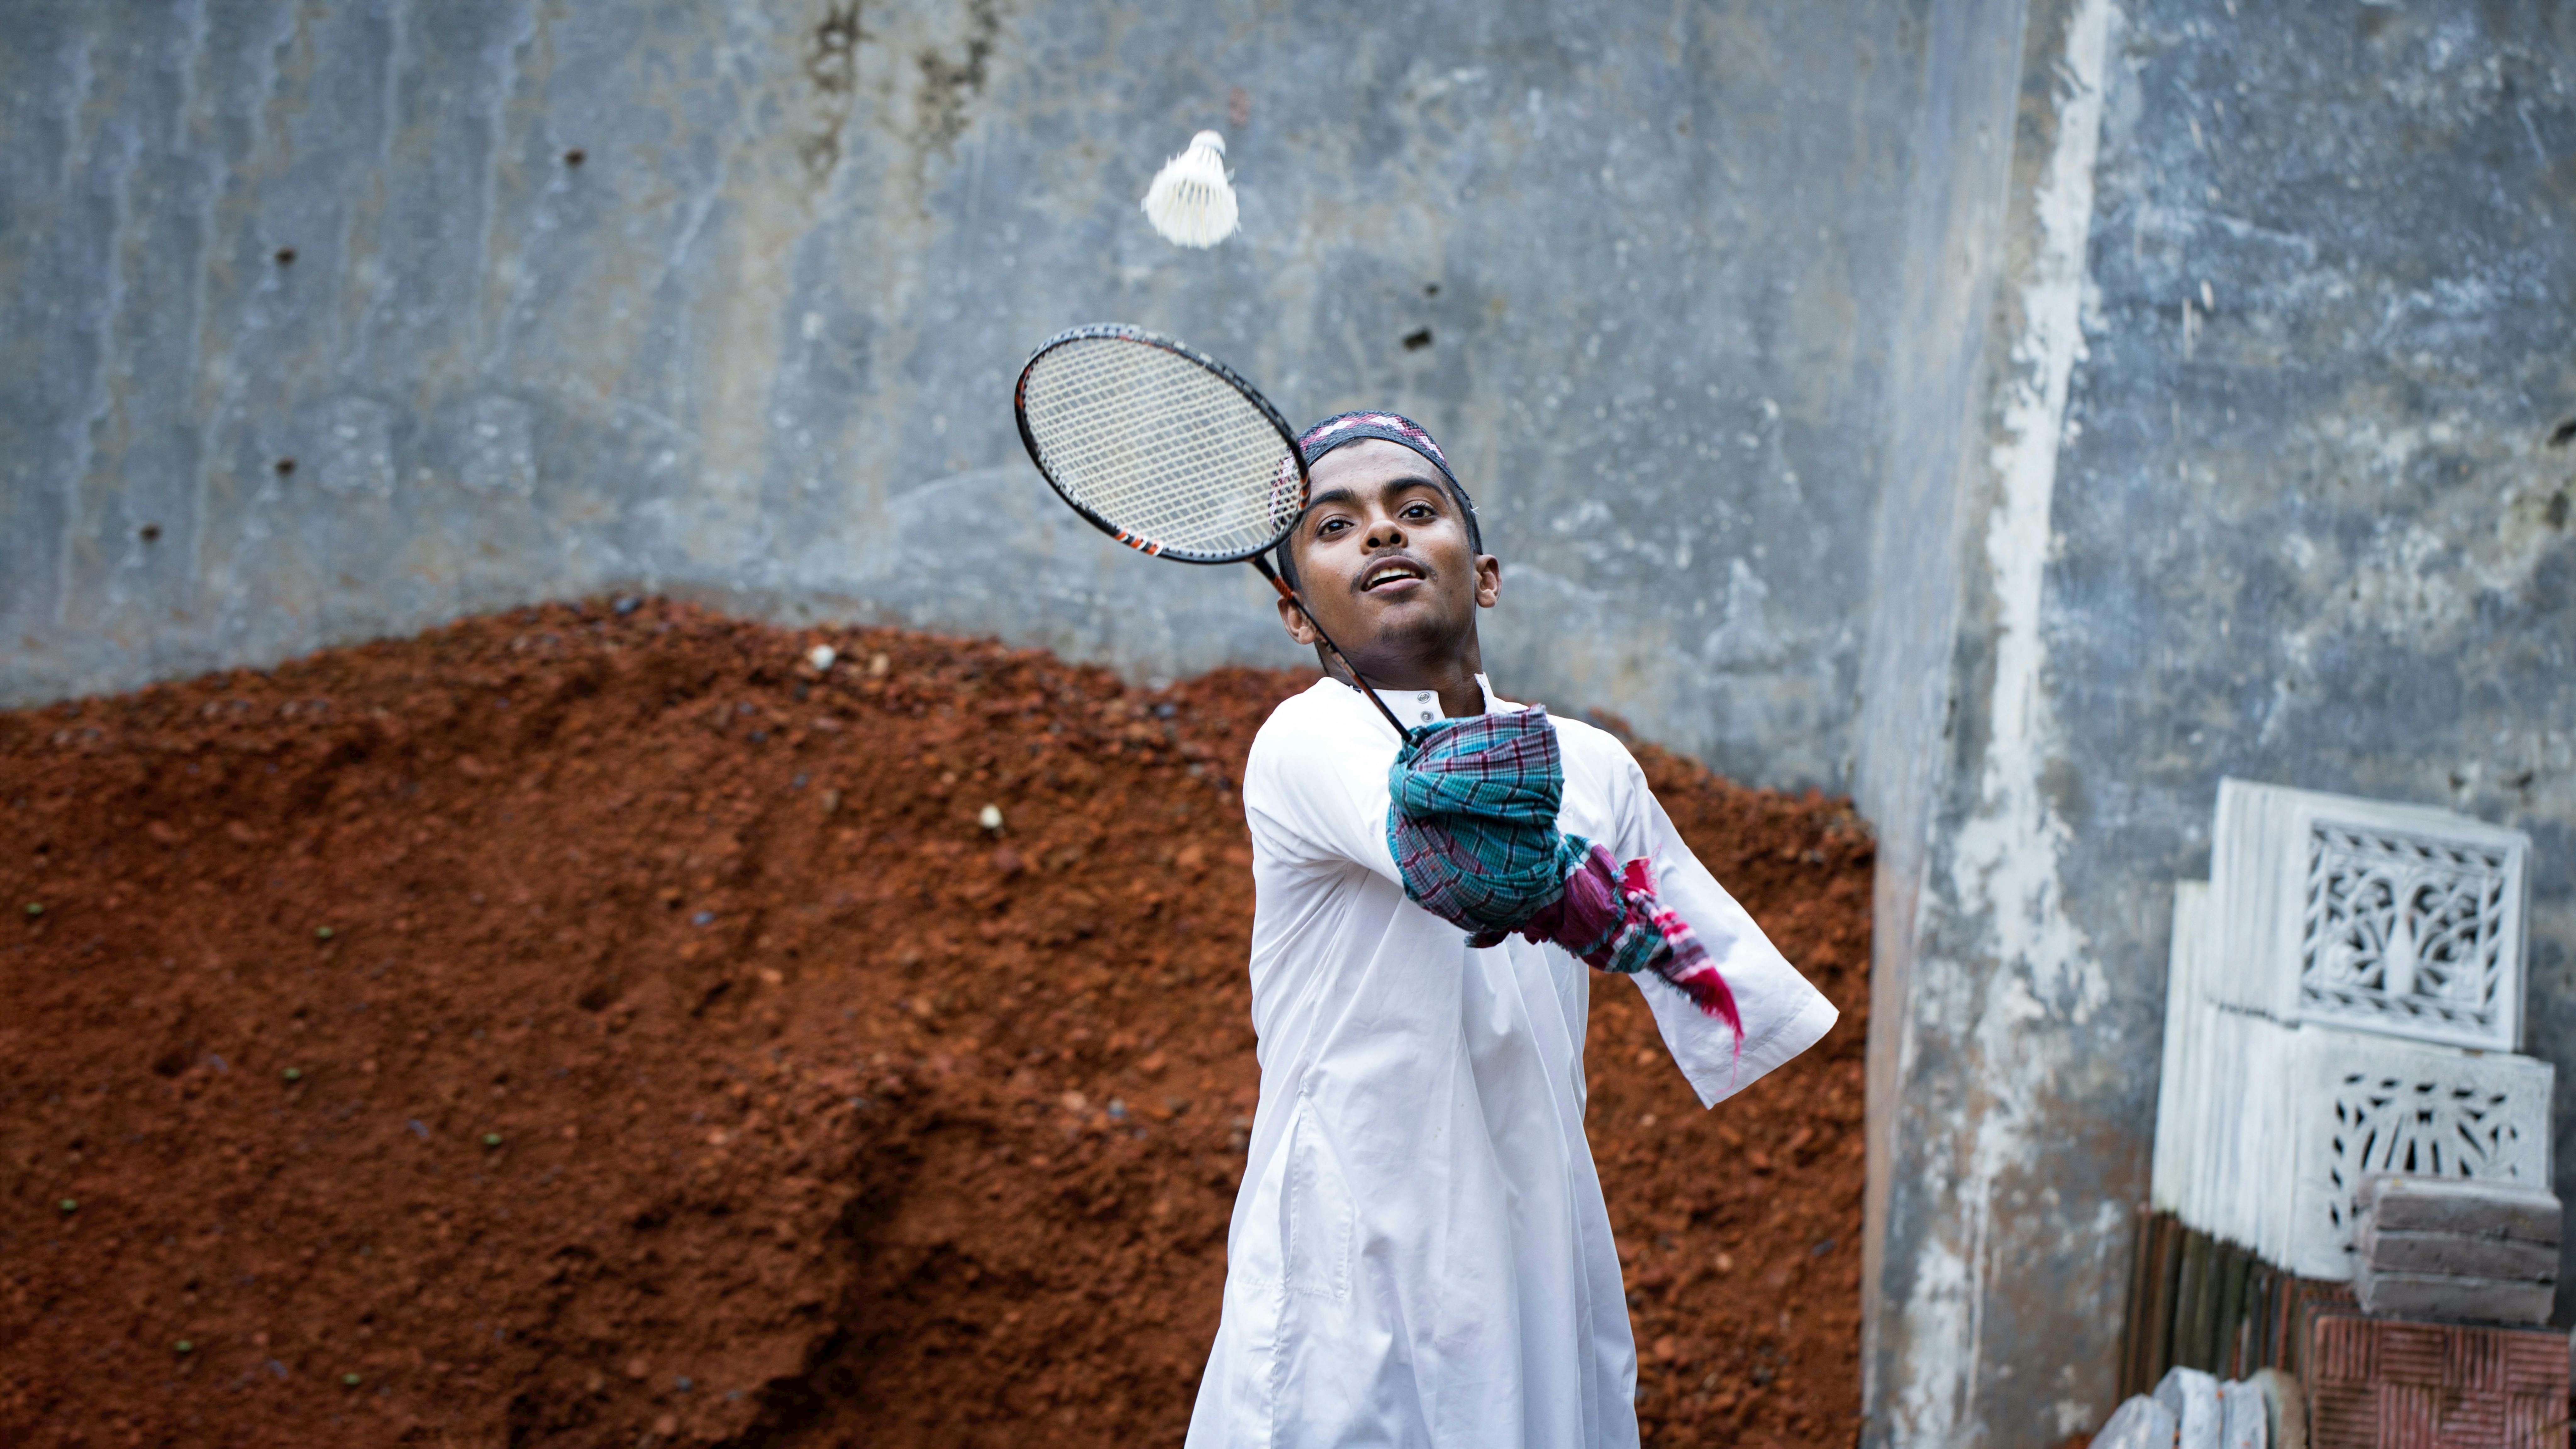 Bangladesh - Omar, un ragazzo disabile gioca a badminton